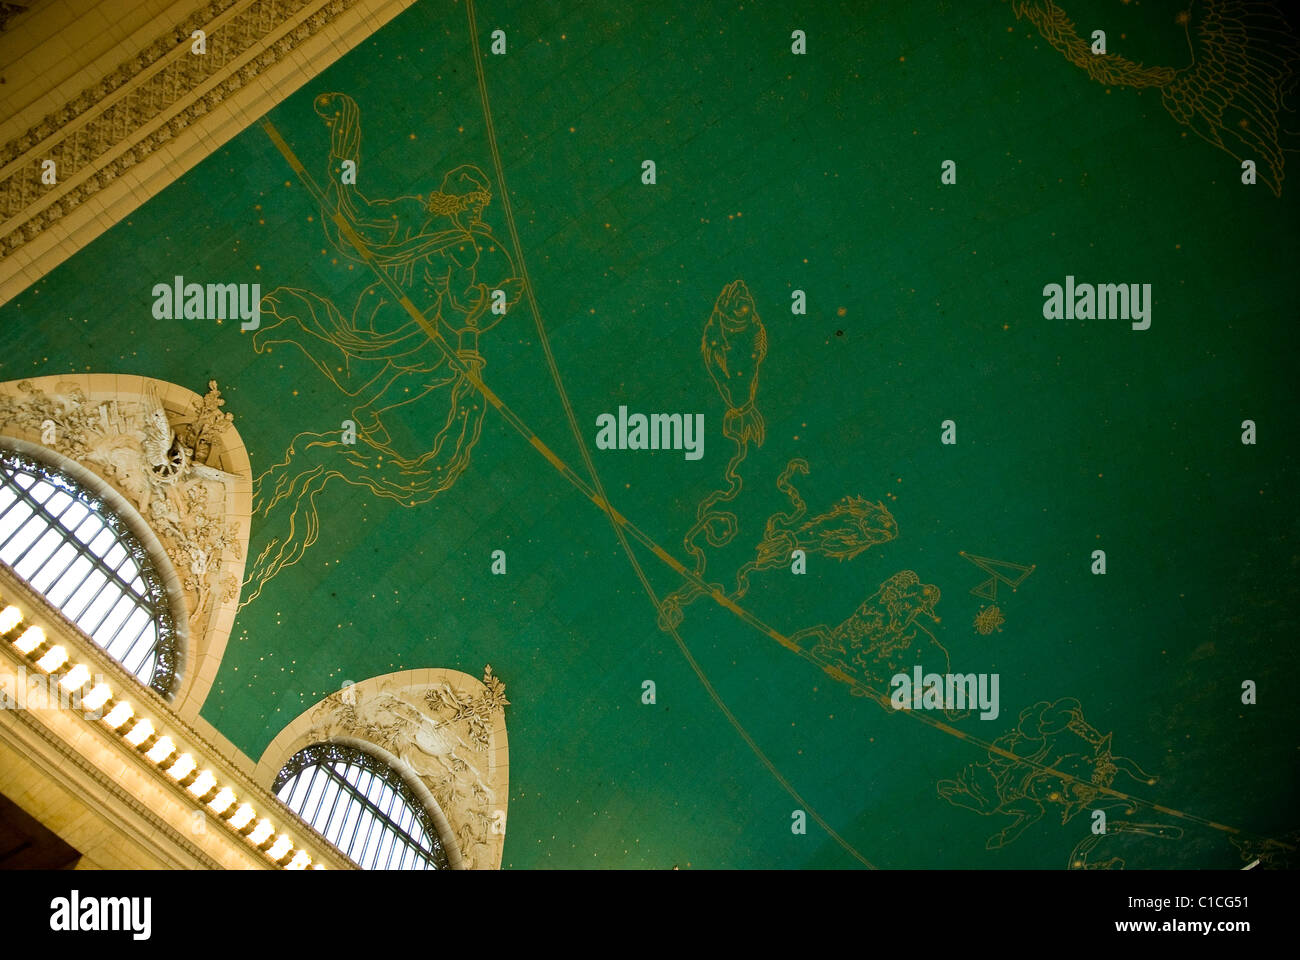 Die astrologische Decke des Grand Central Station, New York City, USA Stockfoto